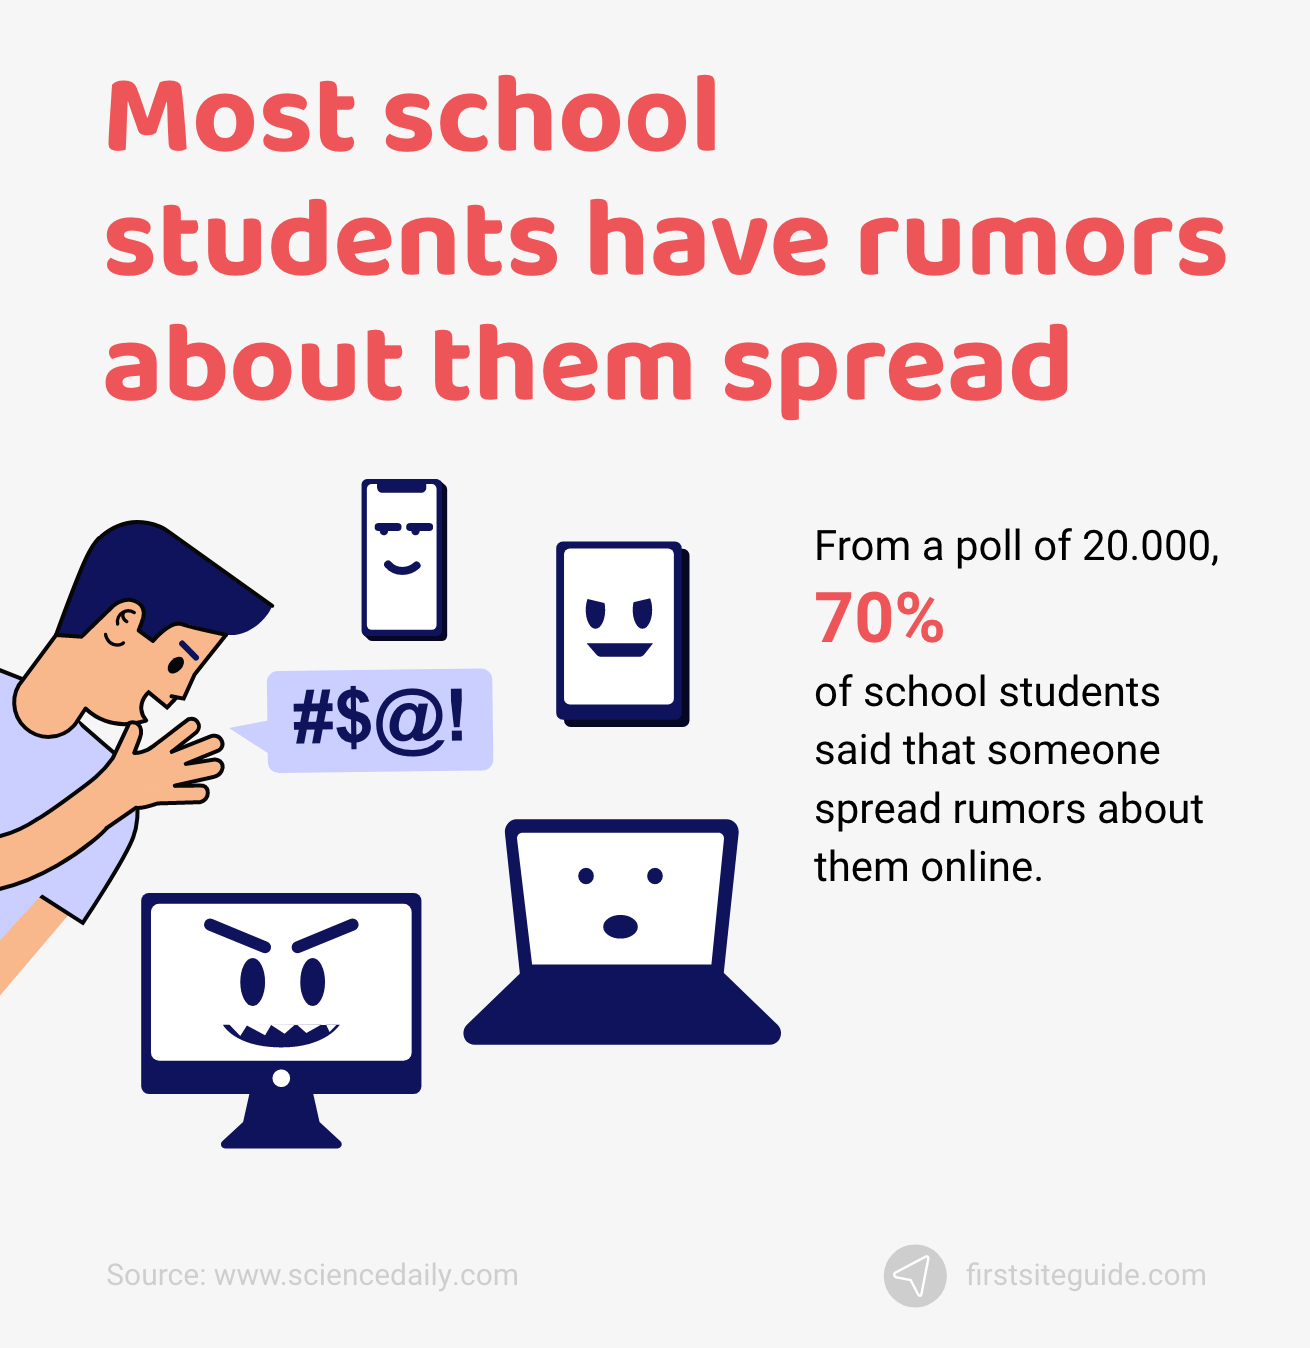 นักเรียนโรงเรียนส่วนใหญ่มีข่าวลือเกี่ยวกับพวกเขาแพร่กระจายทางออนไลน์